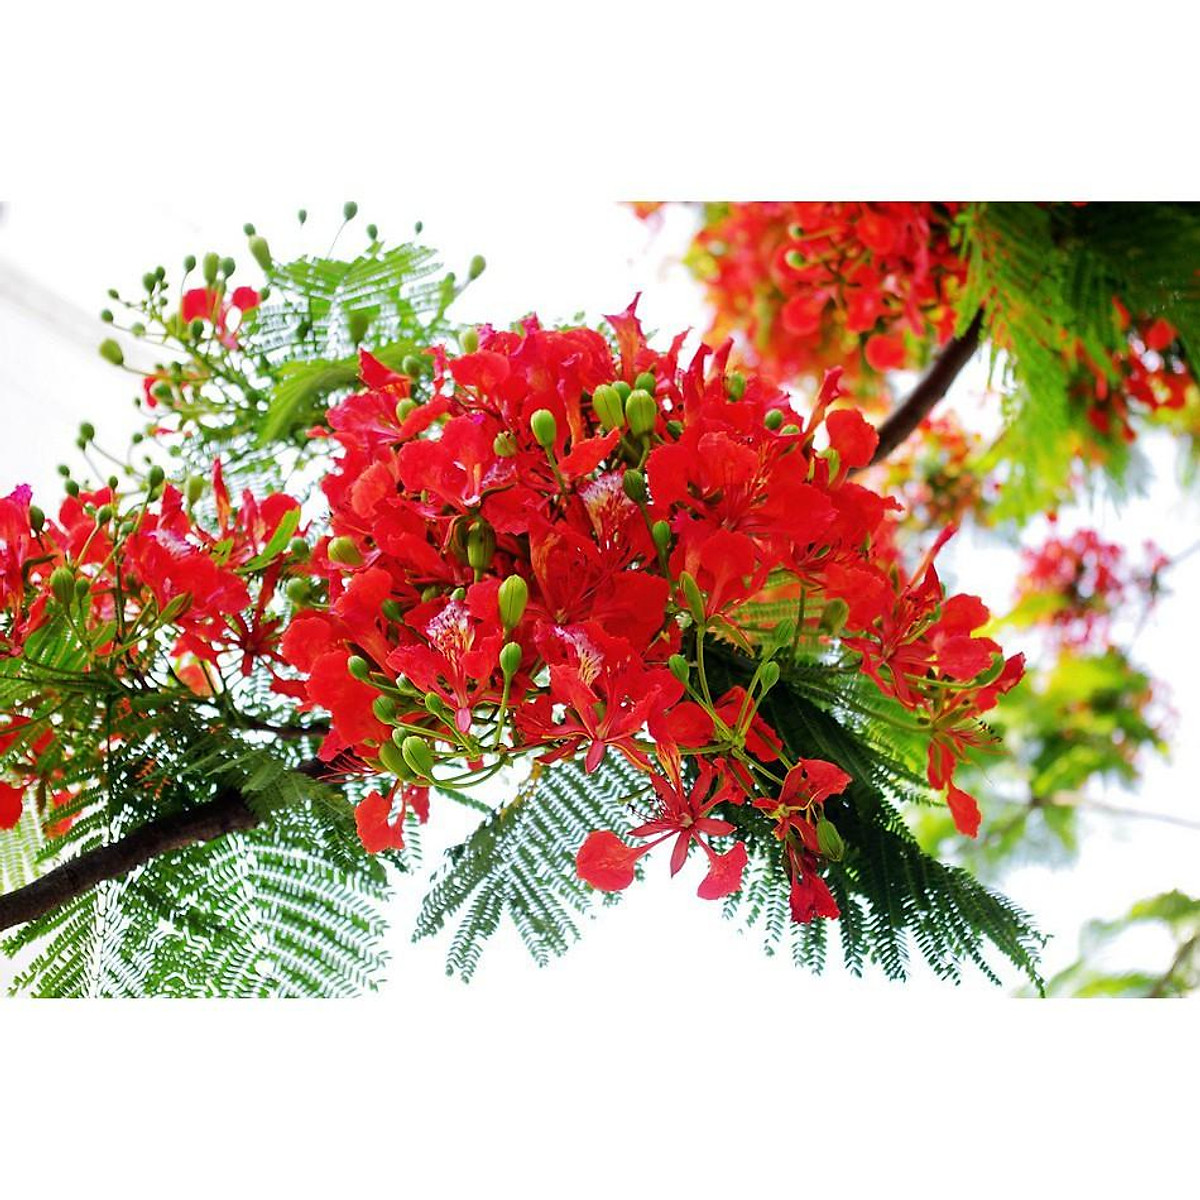 Những hình ảnh đẹp về cây giống cây hoa phượng đỏ sẽ khiến bạn thích thú và tò mò về loài cây này. Với khả năng thích nghi và sinh trưởng khỏe mạnh, cây hoa phượng đỏ nổi bật với vẻ đẹp cuốn hút và sức sống mãnh liệt.